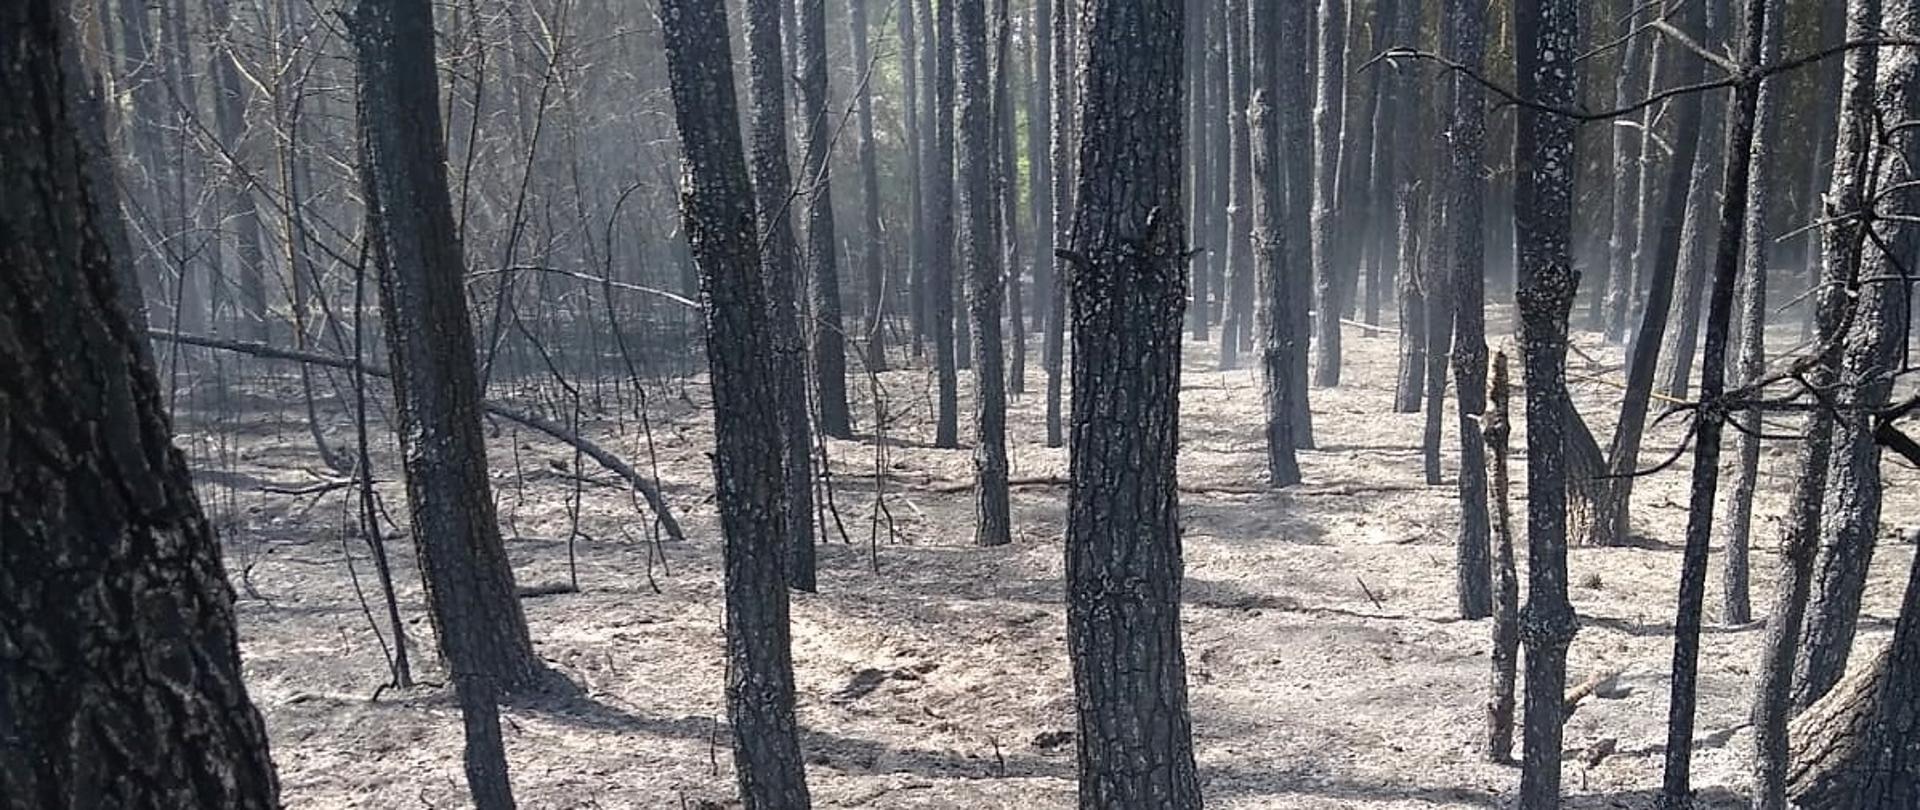 20 maja bieżącego roku około godz. 13:00 do Stanowiska Kierowania KP PSP w Przasnyszu wpłynęło zgłoszenie o pożarze lasu w miejscowości Krukowo.
W chwili przyjazdu straży pożarnej ogniem objęte było ok. 50 arów powierzchni drzewostanu, która była rozdzielona łąką na dwie części. Ze względu na silny wiatr pożar szybko przemieszczał się po wierzchołkach drzew.
Strażacy po zabezpieczeniu miejsca zdarzenia przystąpili do gaszenia pożaru podając prądy gaśnicze wody w natarciu na pożar. W działaniach gaśniczych uczestniczył również samolot Lasów Państwowych. Pojedyncze ogniska dogaszano przy pomocy łopat oraz tłumic.
Spaleniu uległo ok. 0,5 hektara całkowitego drzewostanu w 35 letnim lesie sosnowym. W działaniach udział brało 15 zastępów straży pożarnej.